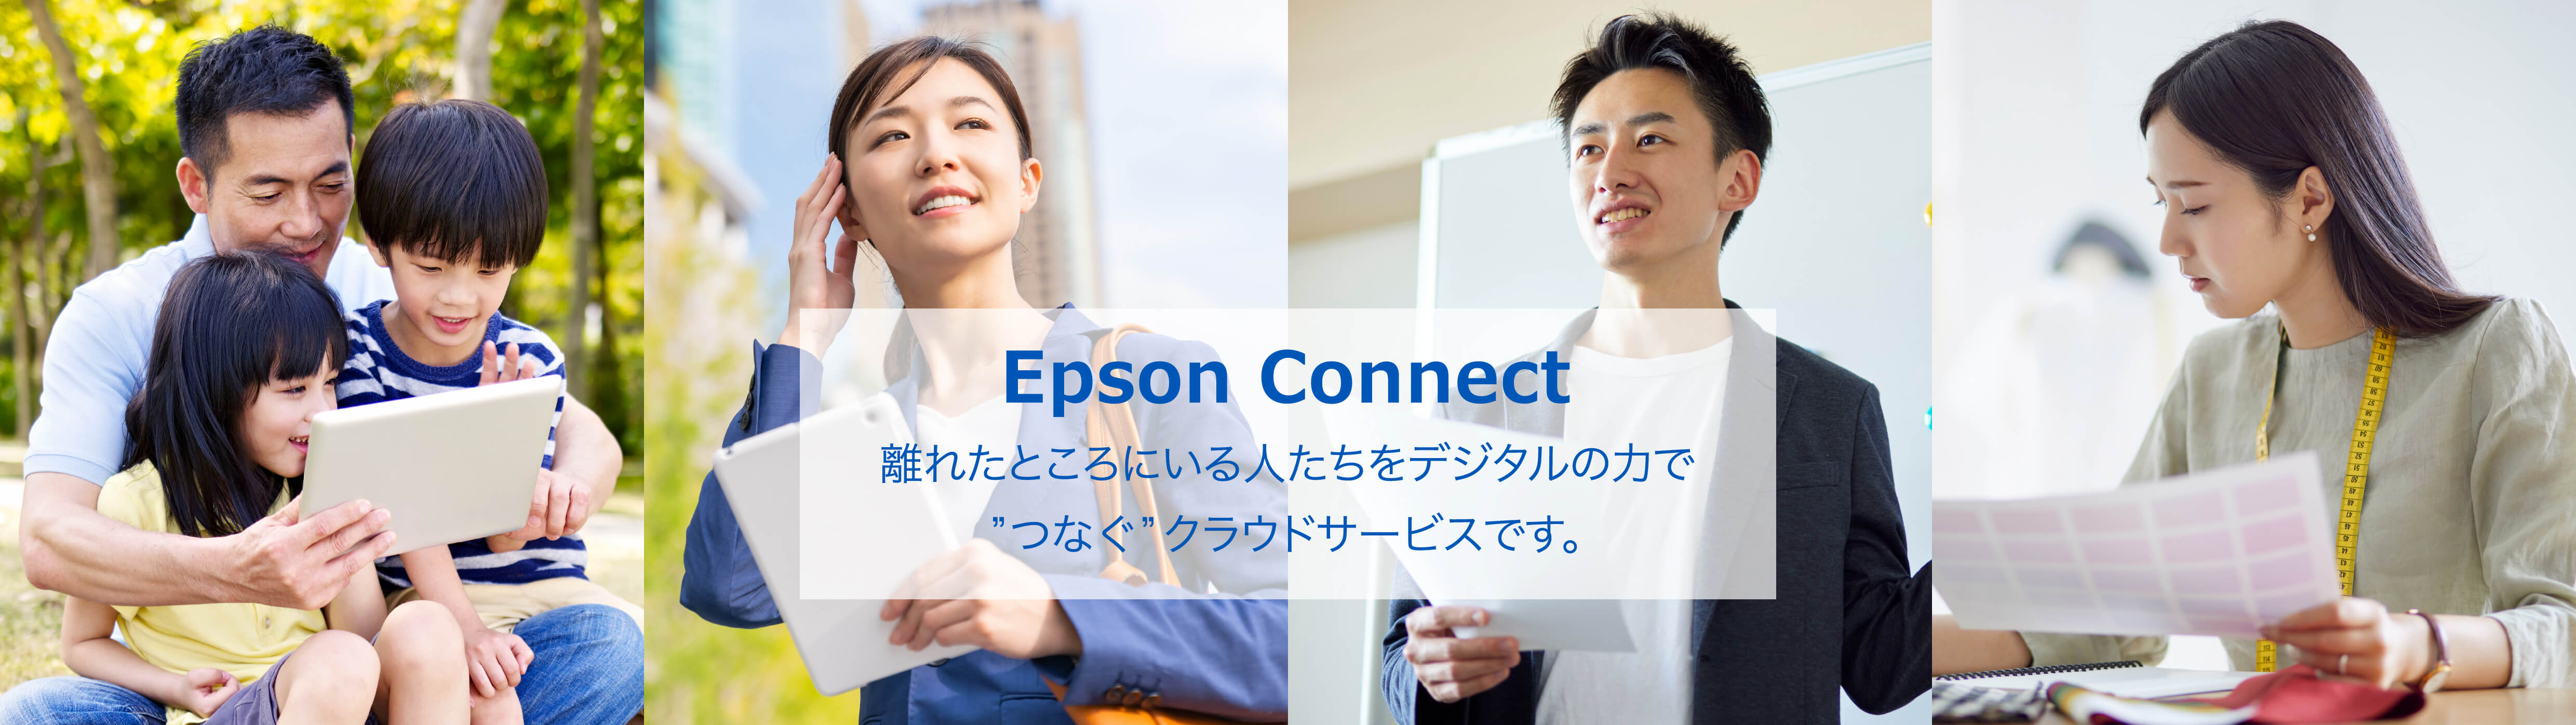 Epson Connect 離れたところにいる人たちをデジタルの力で”つなぐ”クラウドサービスです。